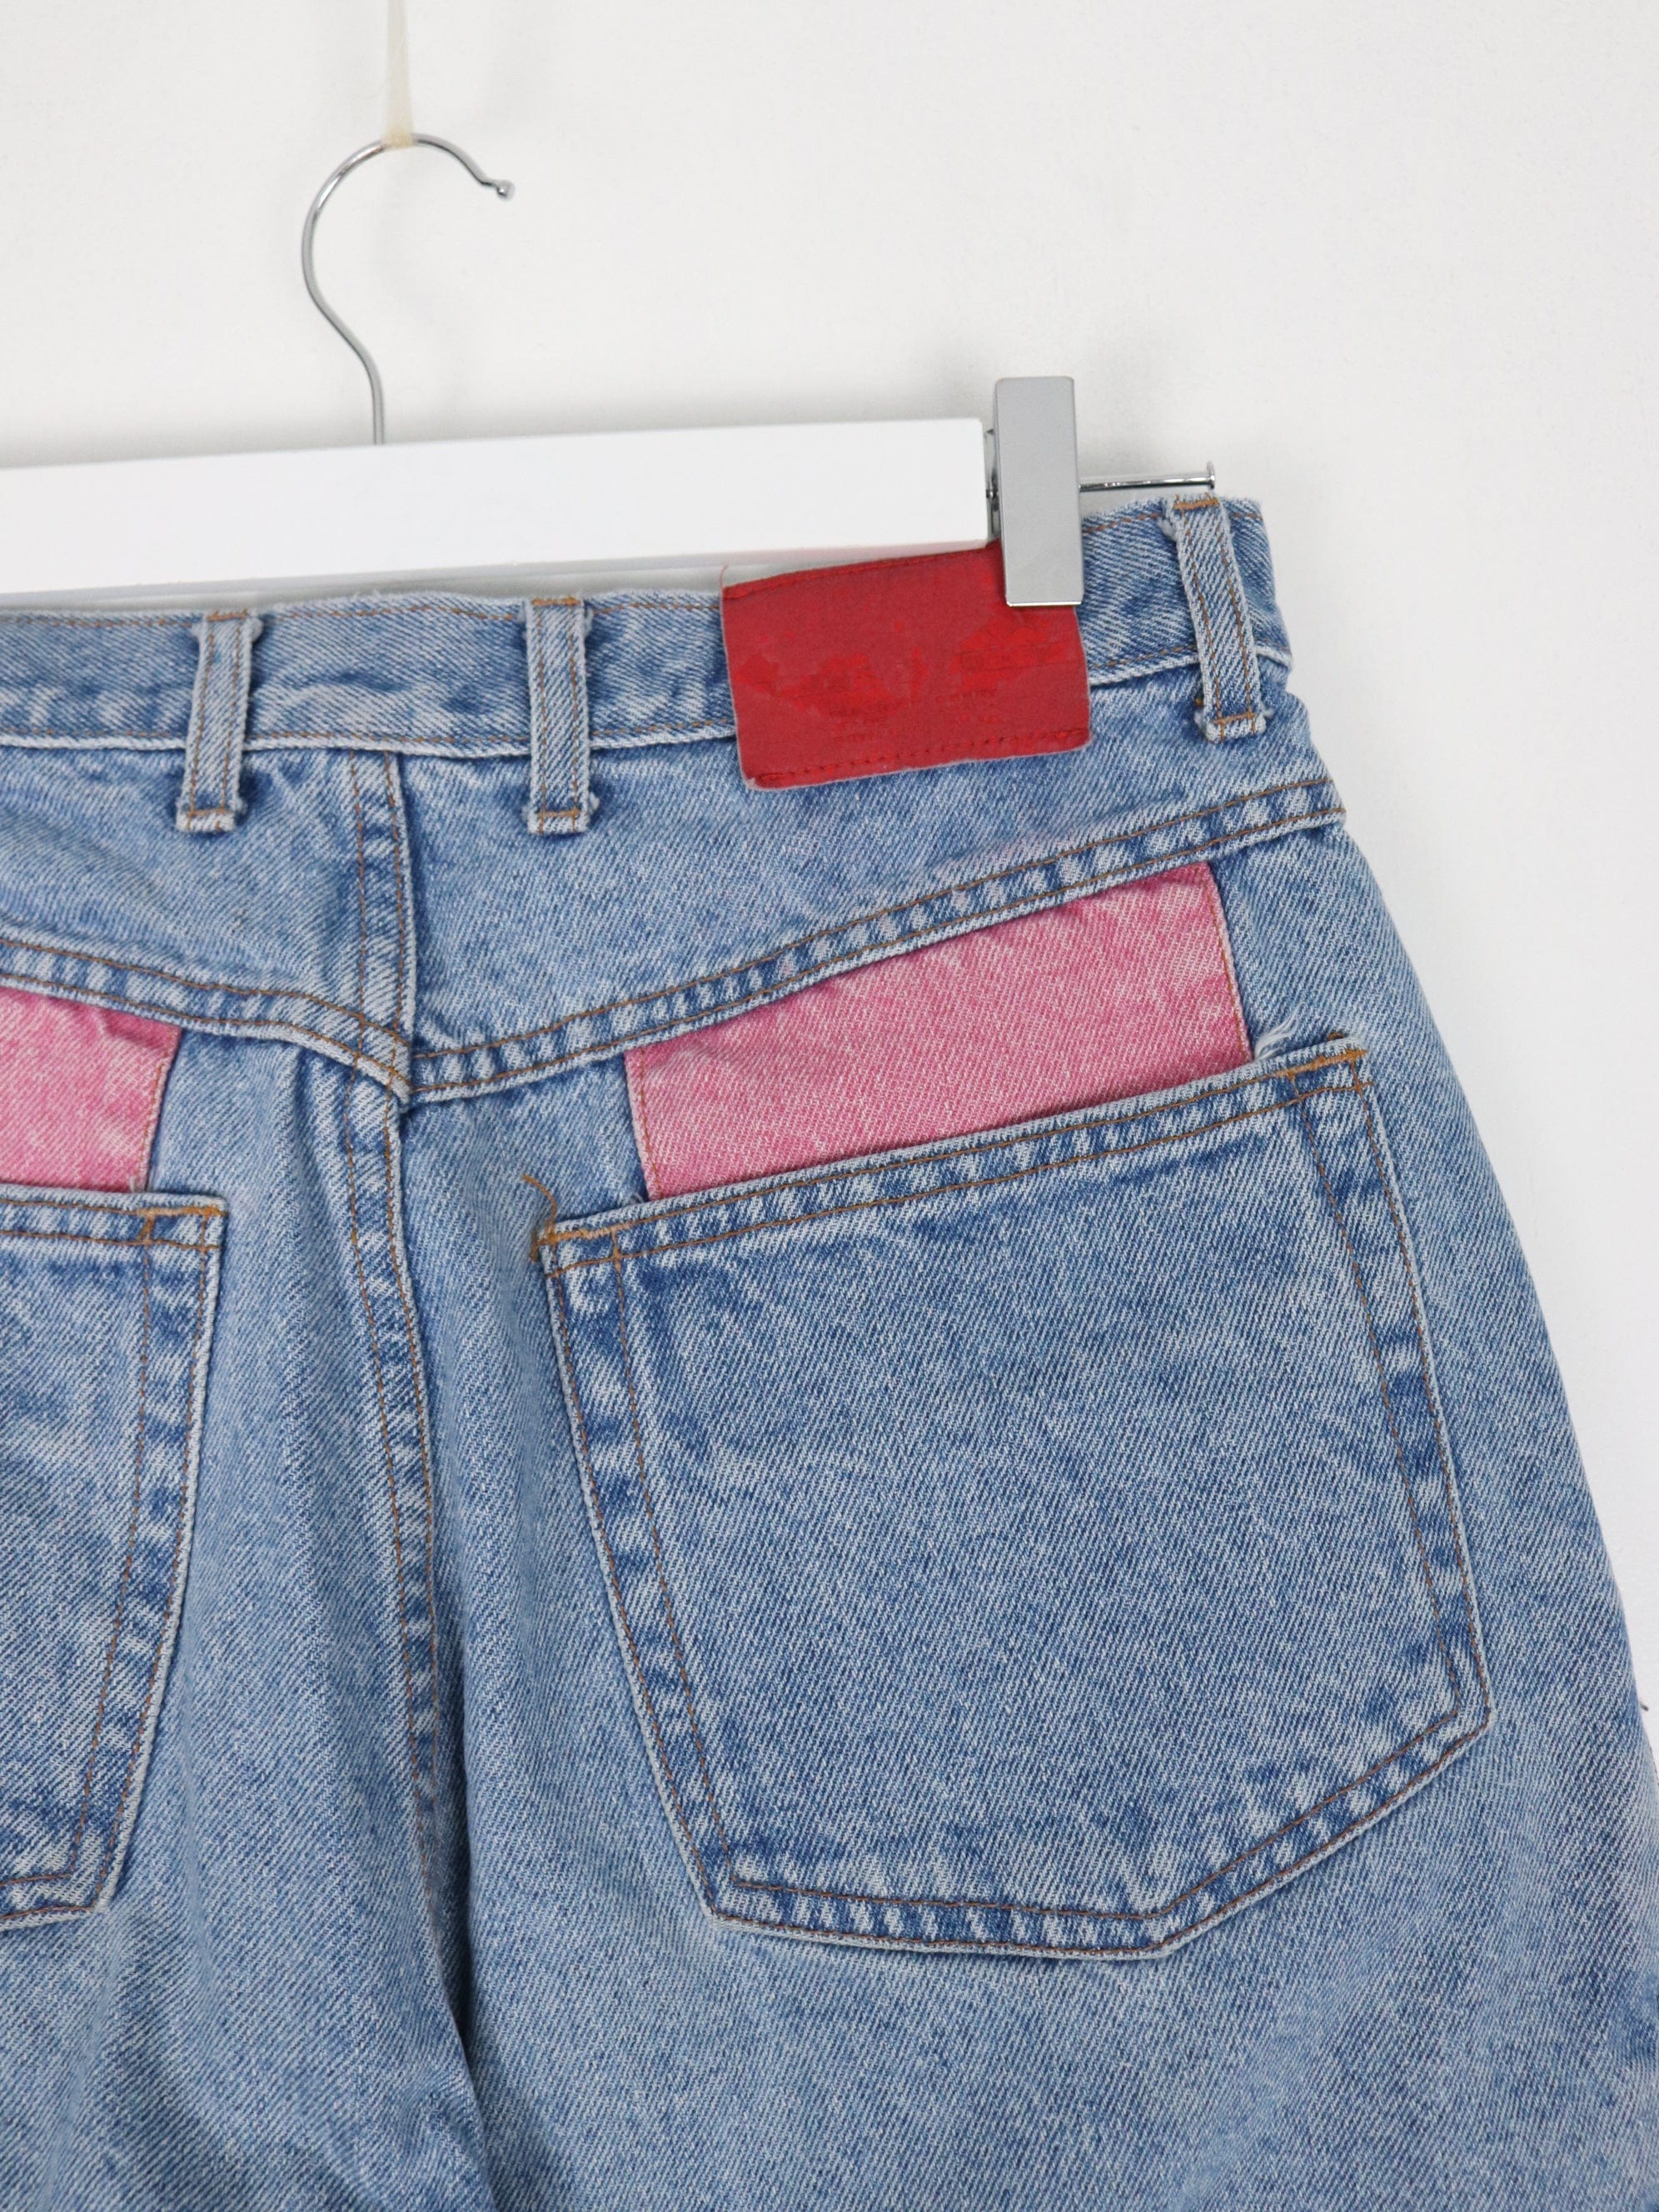 VIntage Hollywood Pants Womens 12 Blue Denim Jeans High Waisted – Proper  Vintage